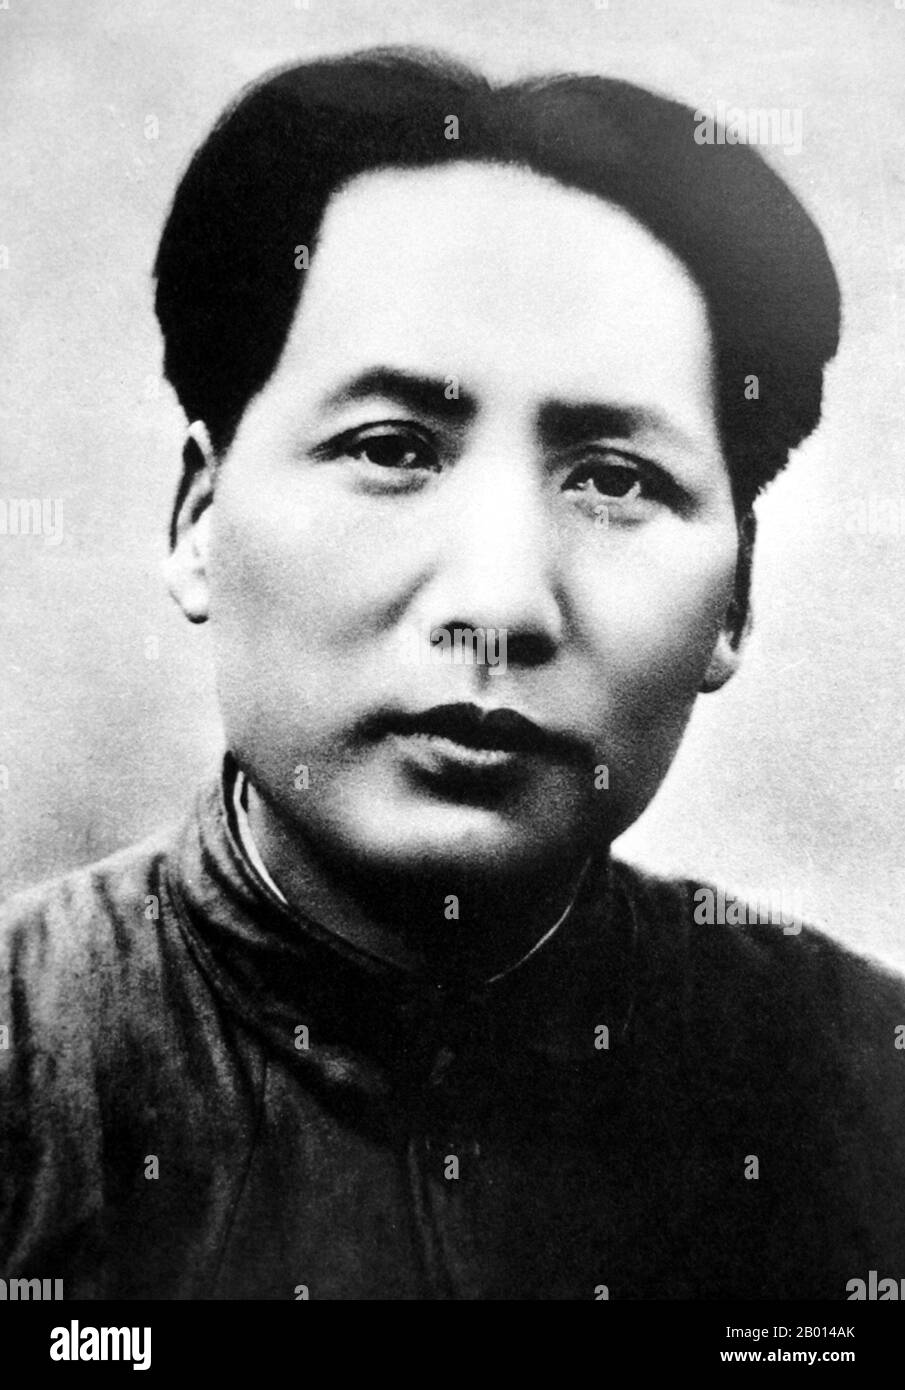 China: Mao Zedong (26. Dezember 1893 – 9. September 1976), Vorsitzender der Volksrepublik China, c. 1937. Mao Zedong, auch als Mao Tse-tung transliteriert, war ein chinesischer kommunistischer Revolutionär, Guerilla-Kriegsstratege, Autor, politischer Theoretiker und Führer der chinesischen Revolution. Allgemein als Vorsitzender Mao bezeichnet, war er seit seiner Gründung im Jahr 1949 der Architekt der Volksrepublik China (PRC) und hatte bis zu seinem Tod im Jahr 1976 die autoritäre Kontrolle über die Nation. Sein theoretischer Beitrag zum Marxismus-Leninismus wurde kollektiv als Maoismus bezeichnet. Stockfoto